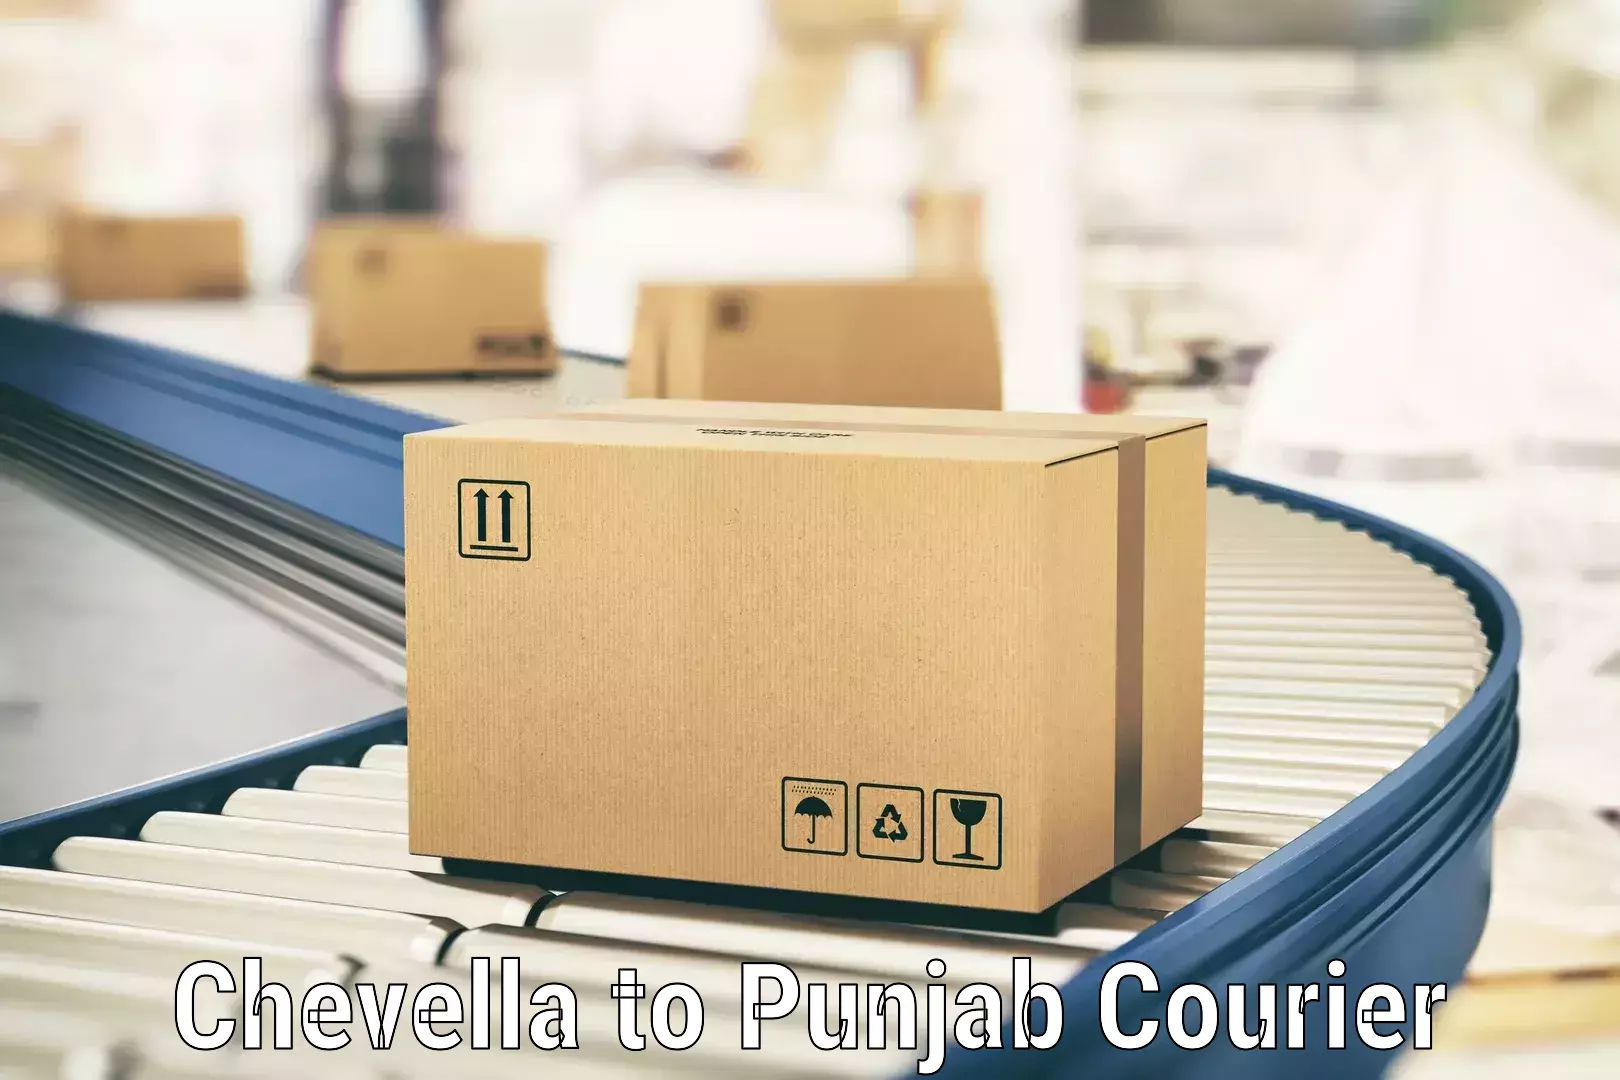 Multi-city courier Chevella to Dhilwan